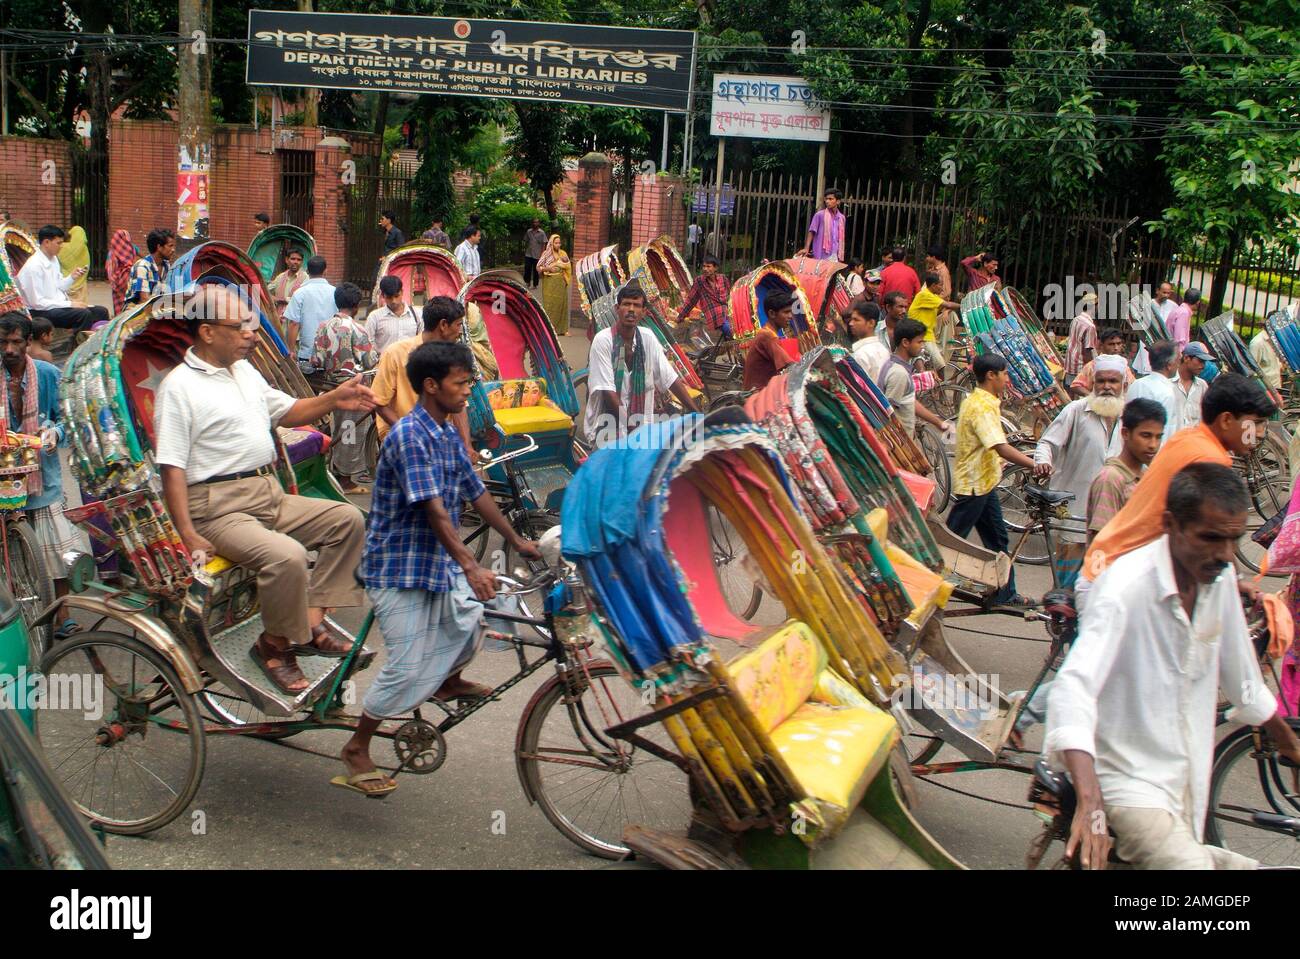 Dhaka, Bangladesh - 17 de septiembre de 2007: Personas no identificadas en rickshaws tradicionales, modo habitual barato de transporte Foto de stock